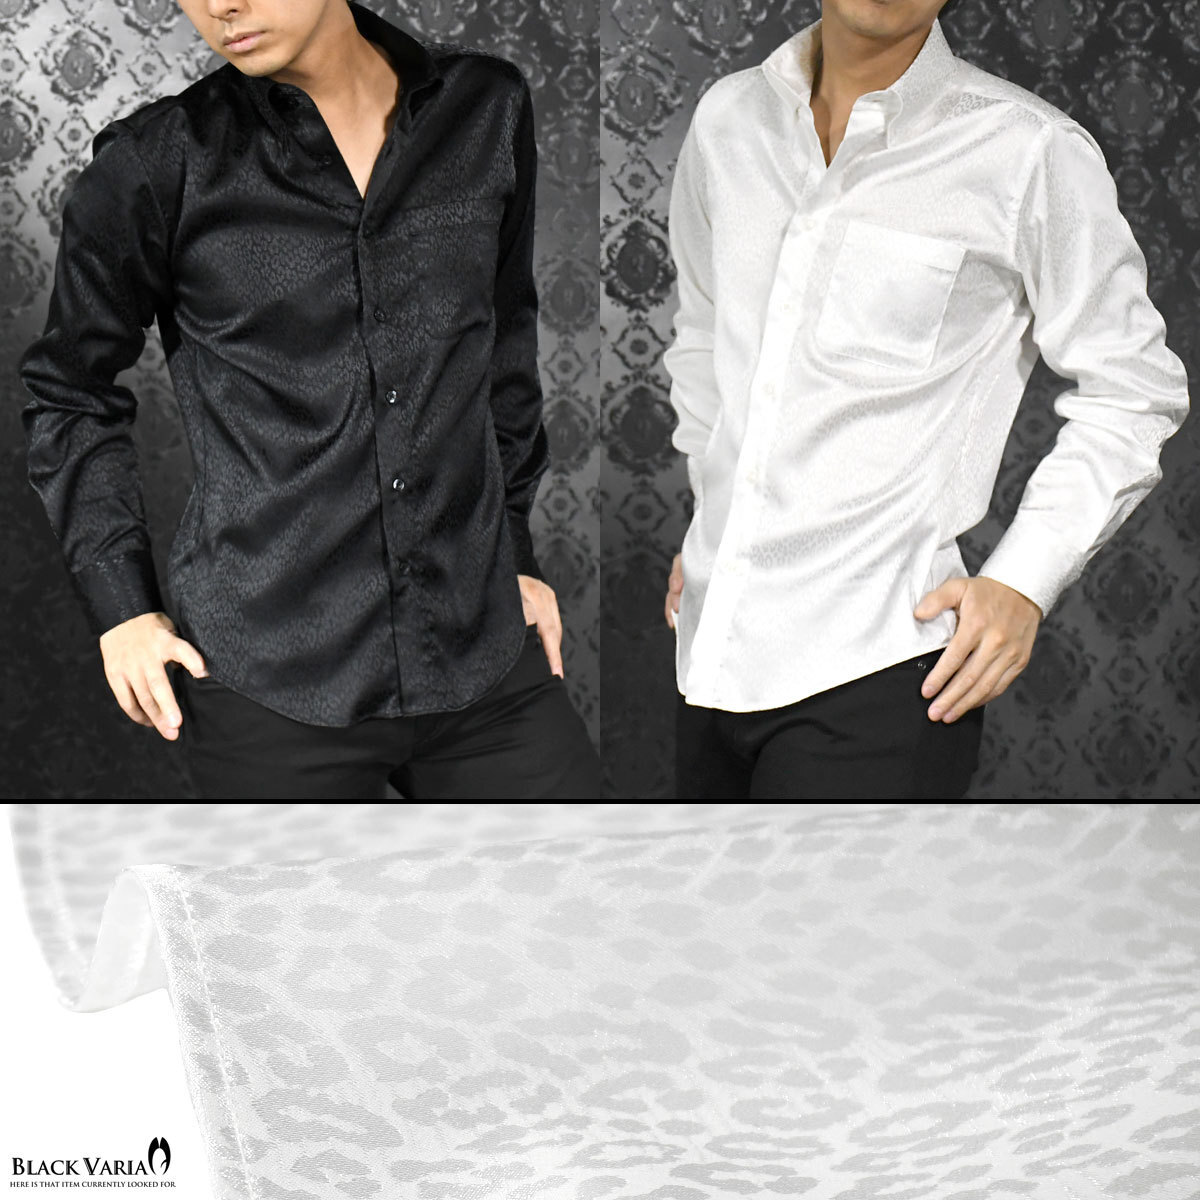 a181710-wh BLACK VARIA ドゥエボットーニ ヒョウ柄 豹 ジャガード レギュラーカラードレスシャツ 日本製 メンズ(ホワイト白) S ステージ_画像4